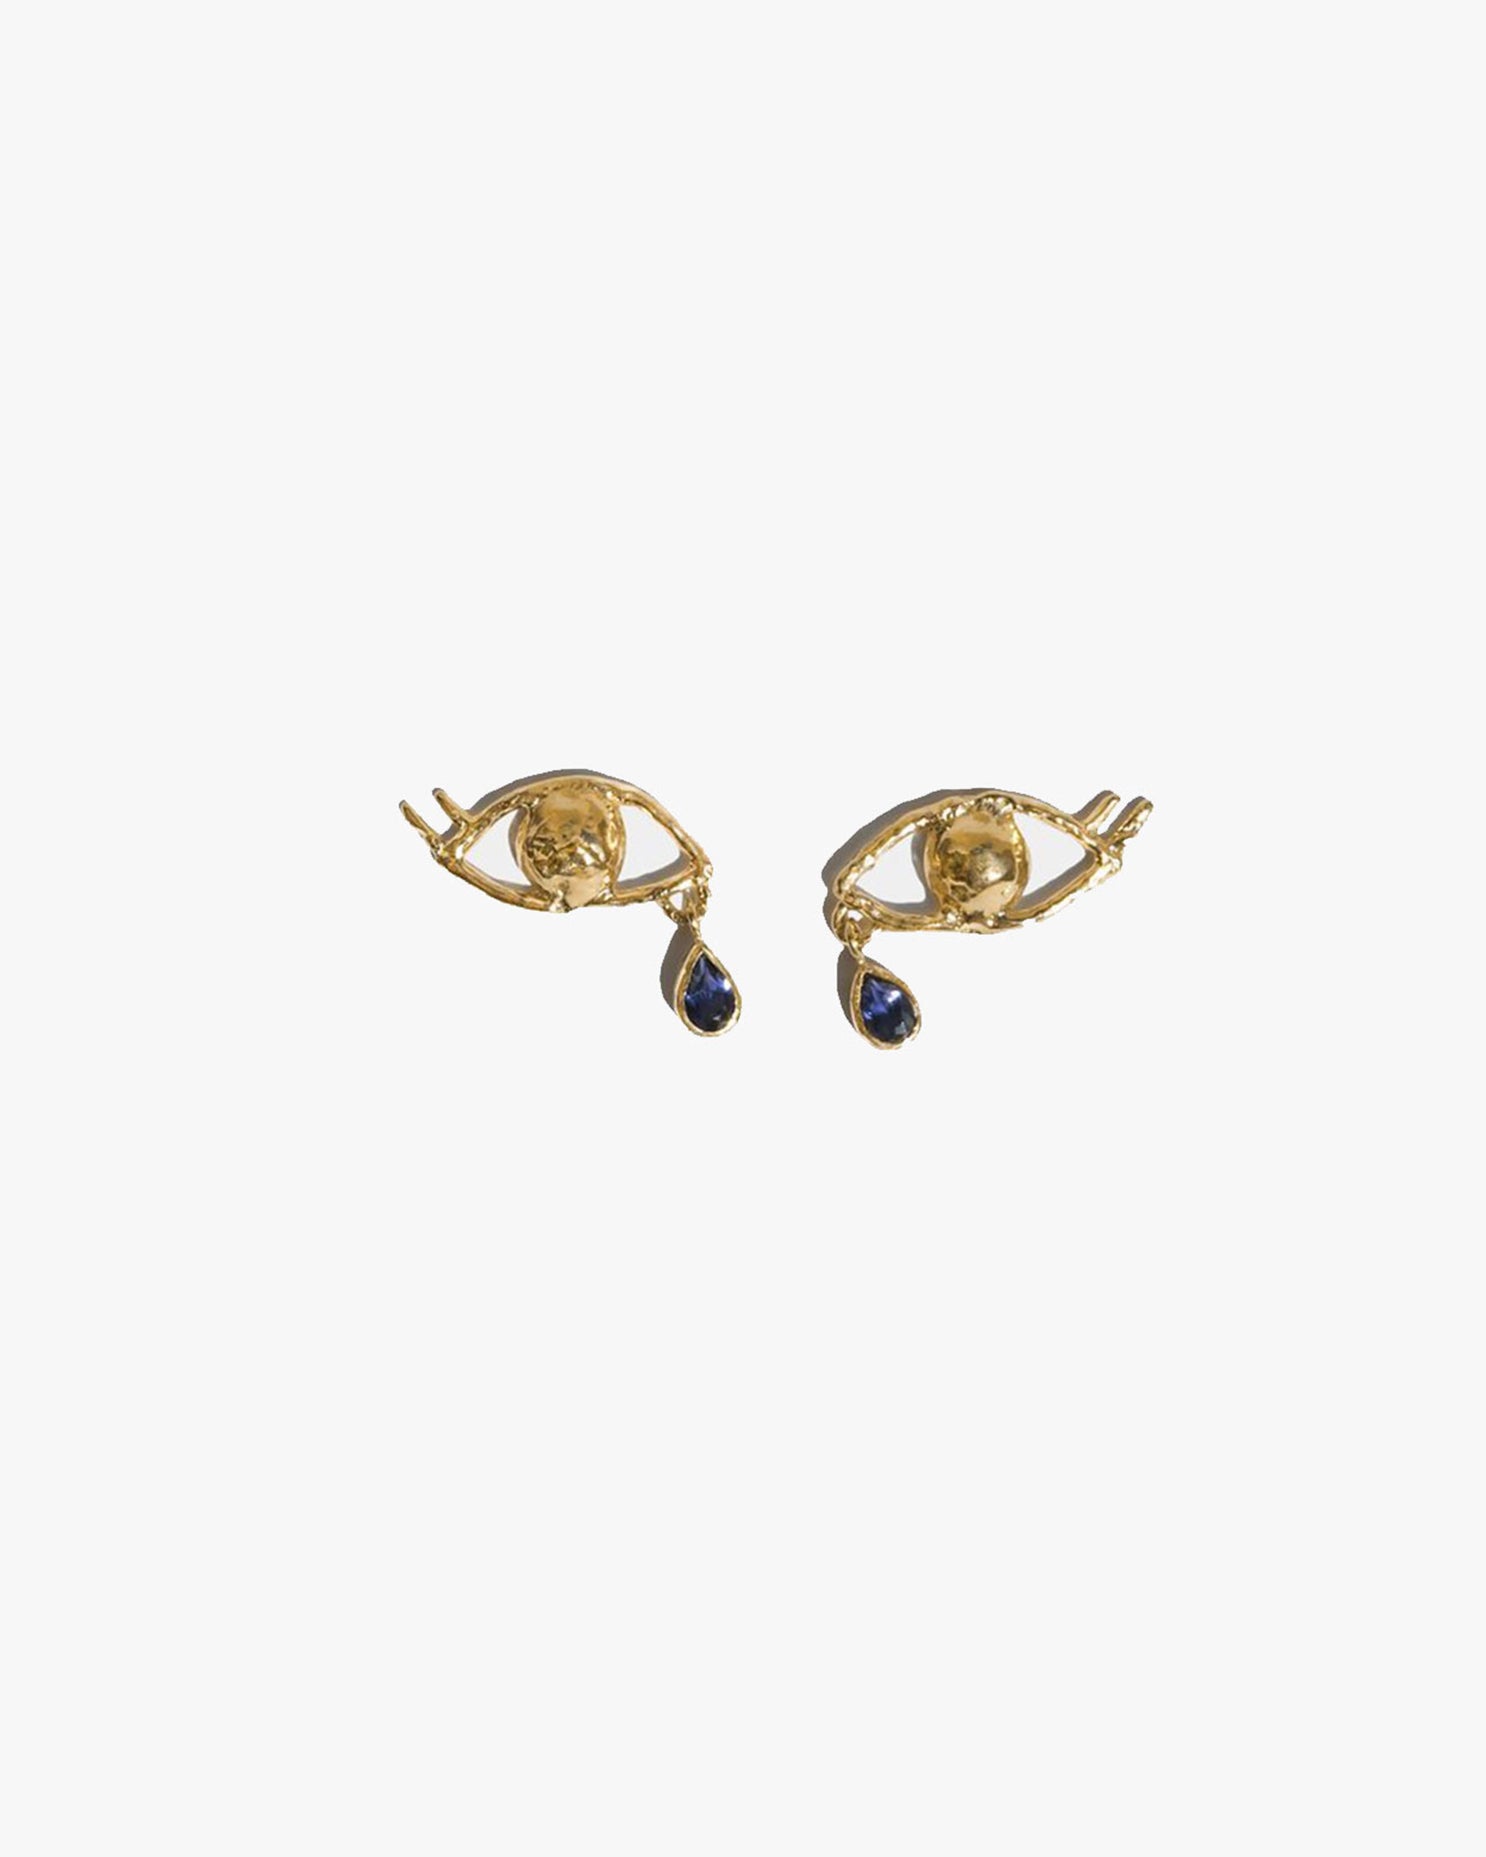 Cecie Lolite Earrings in Gold